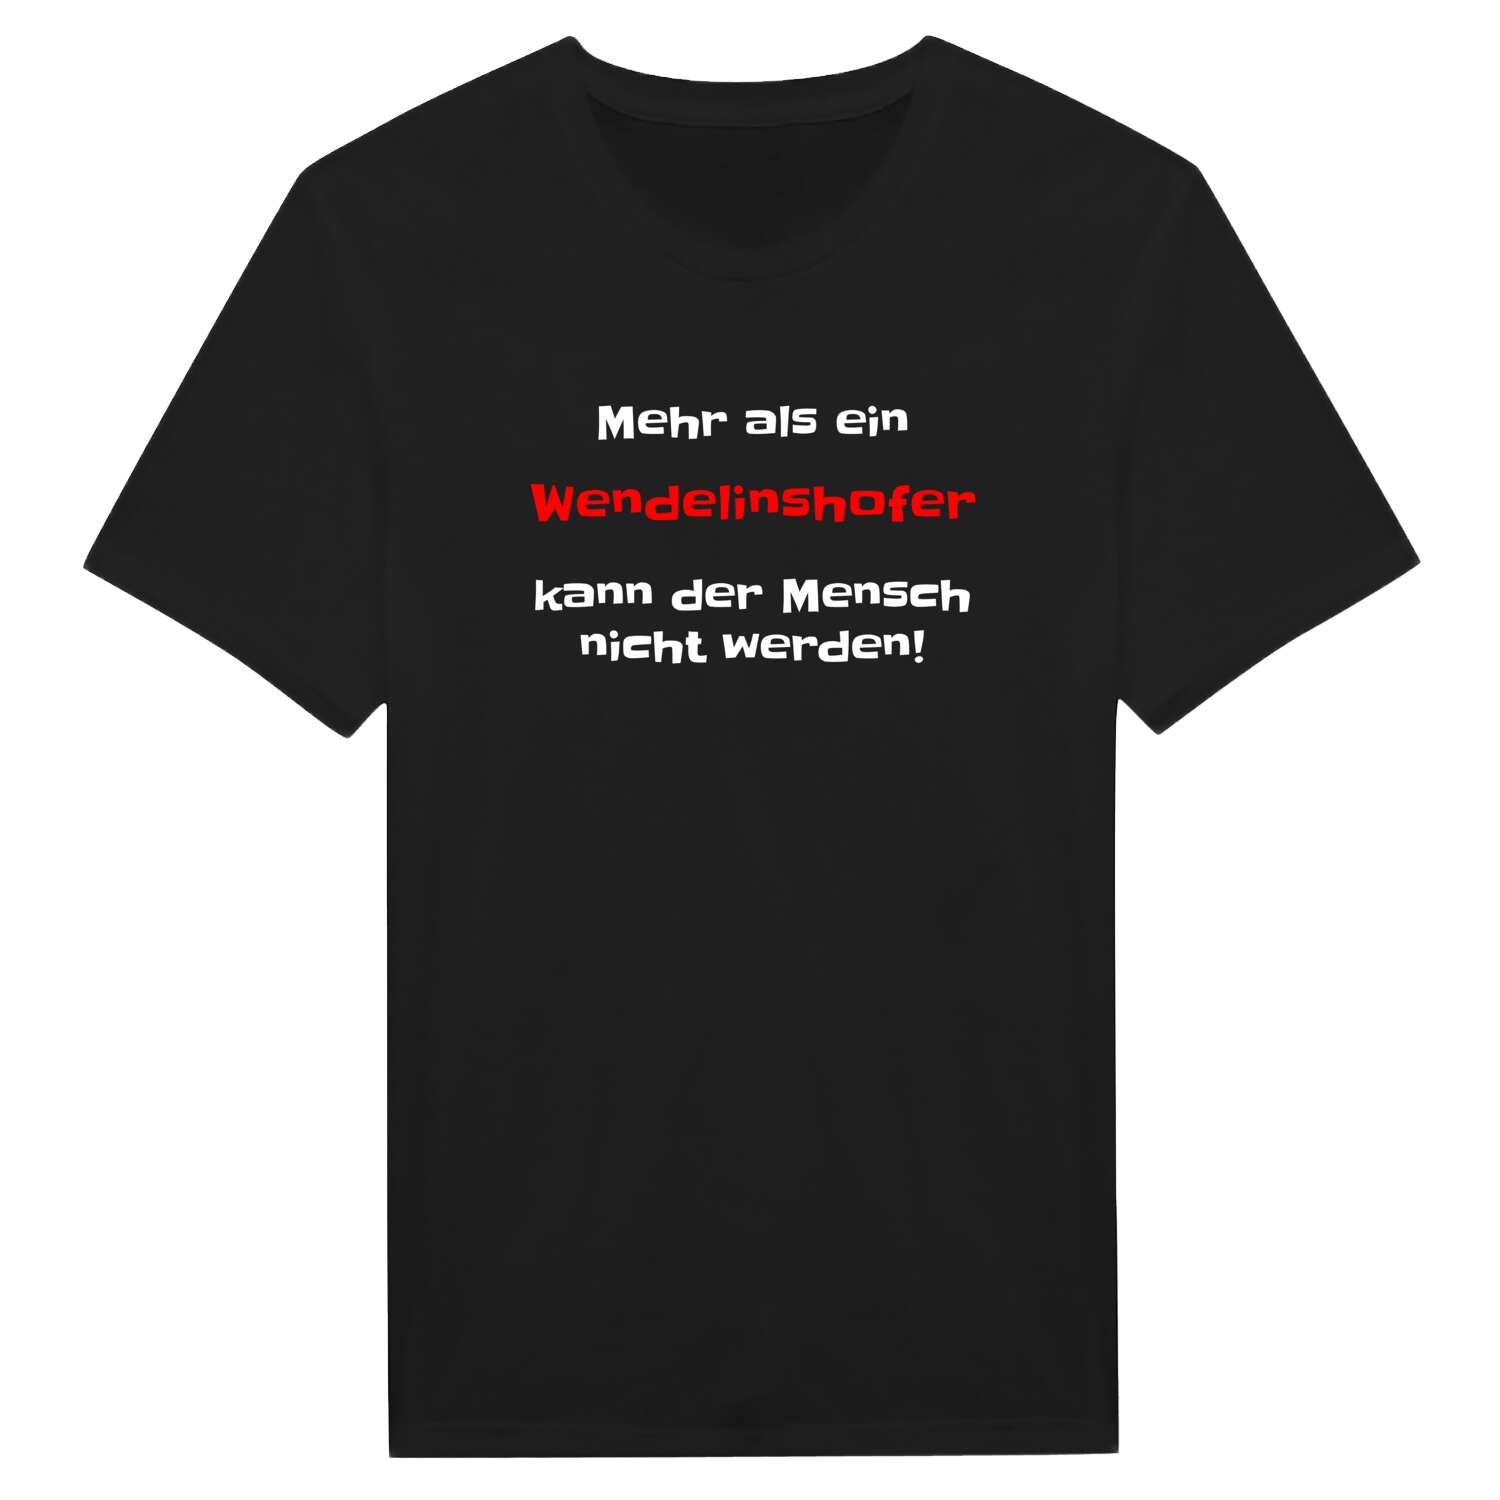 Wendelinshof T-Shirt »Mehr als ein«